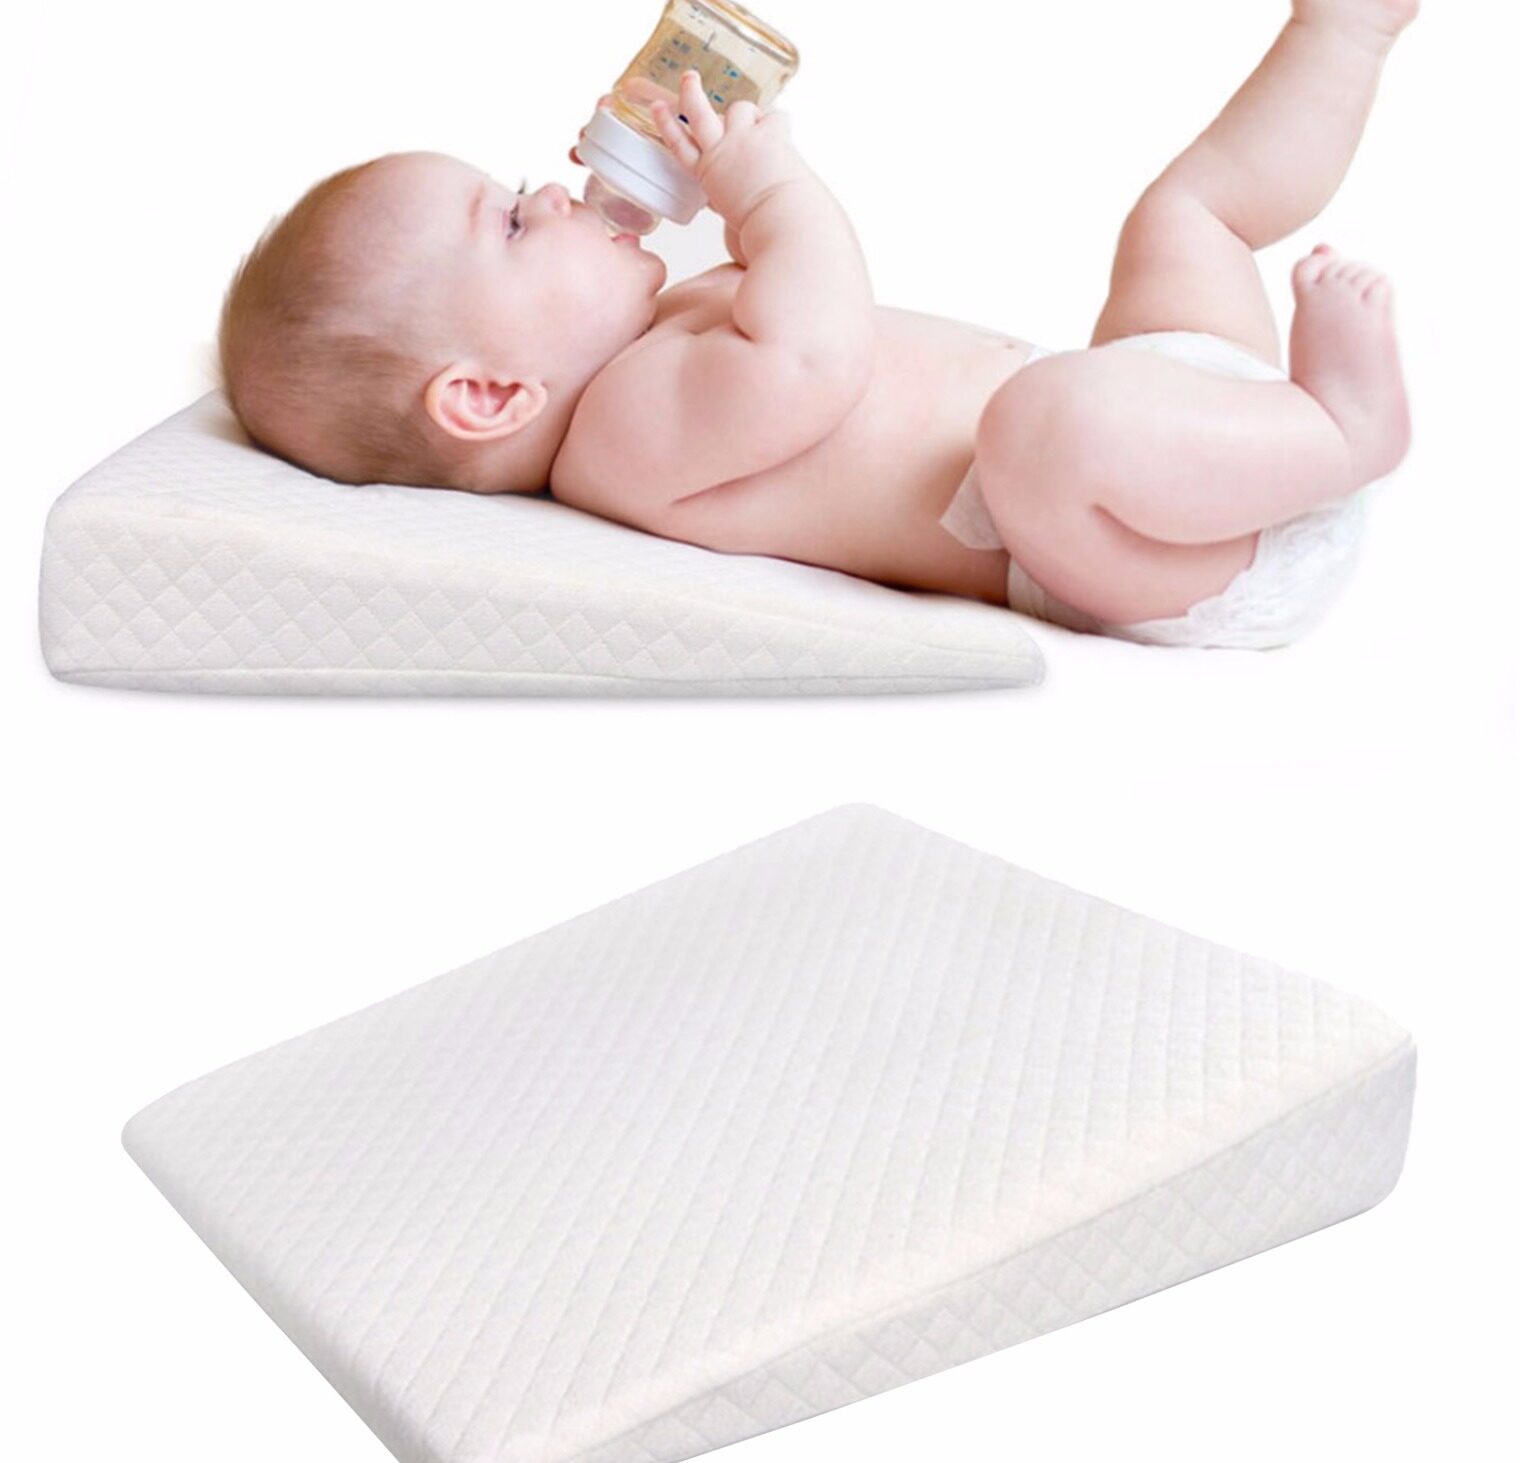 หมอนลิ่มเปลสำหรับทารกไหลย้อน | หมอนรองคอเอียง15องศา | เมมโมรีโฟมผ้าฝ้ายและผ้าคลุมกันน้ำ | หมอนลิ่มสำหรับเด็กวัยหัดเดินใต้ที่นอน | อุปกรณ์เสริมสำหรับเตียงนอนเด็กทารกและวิธีการนอนหลับที่ดีกว่า